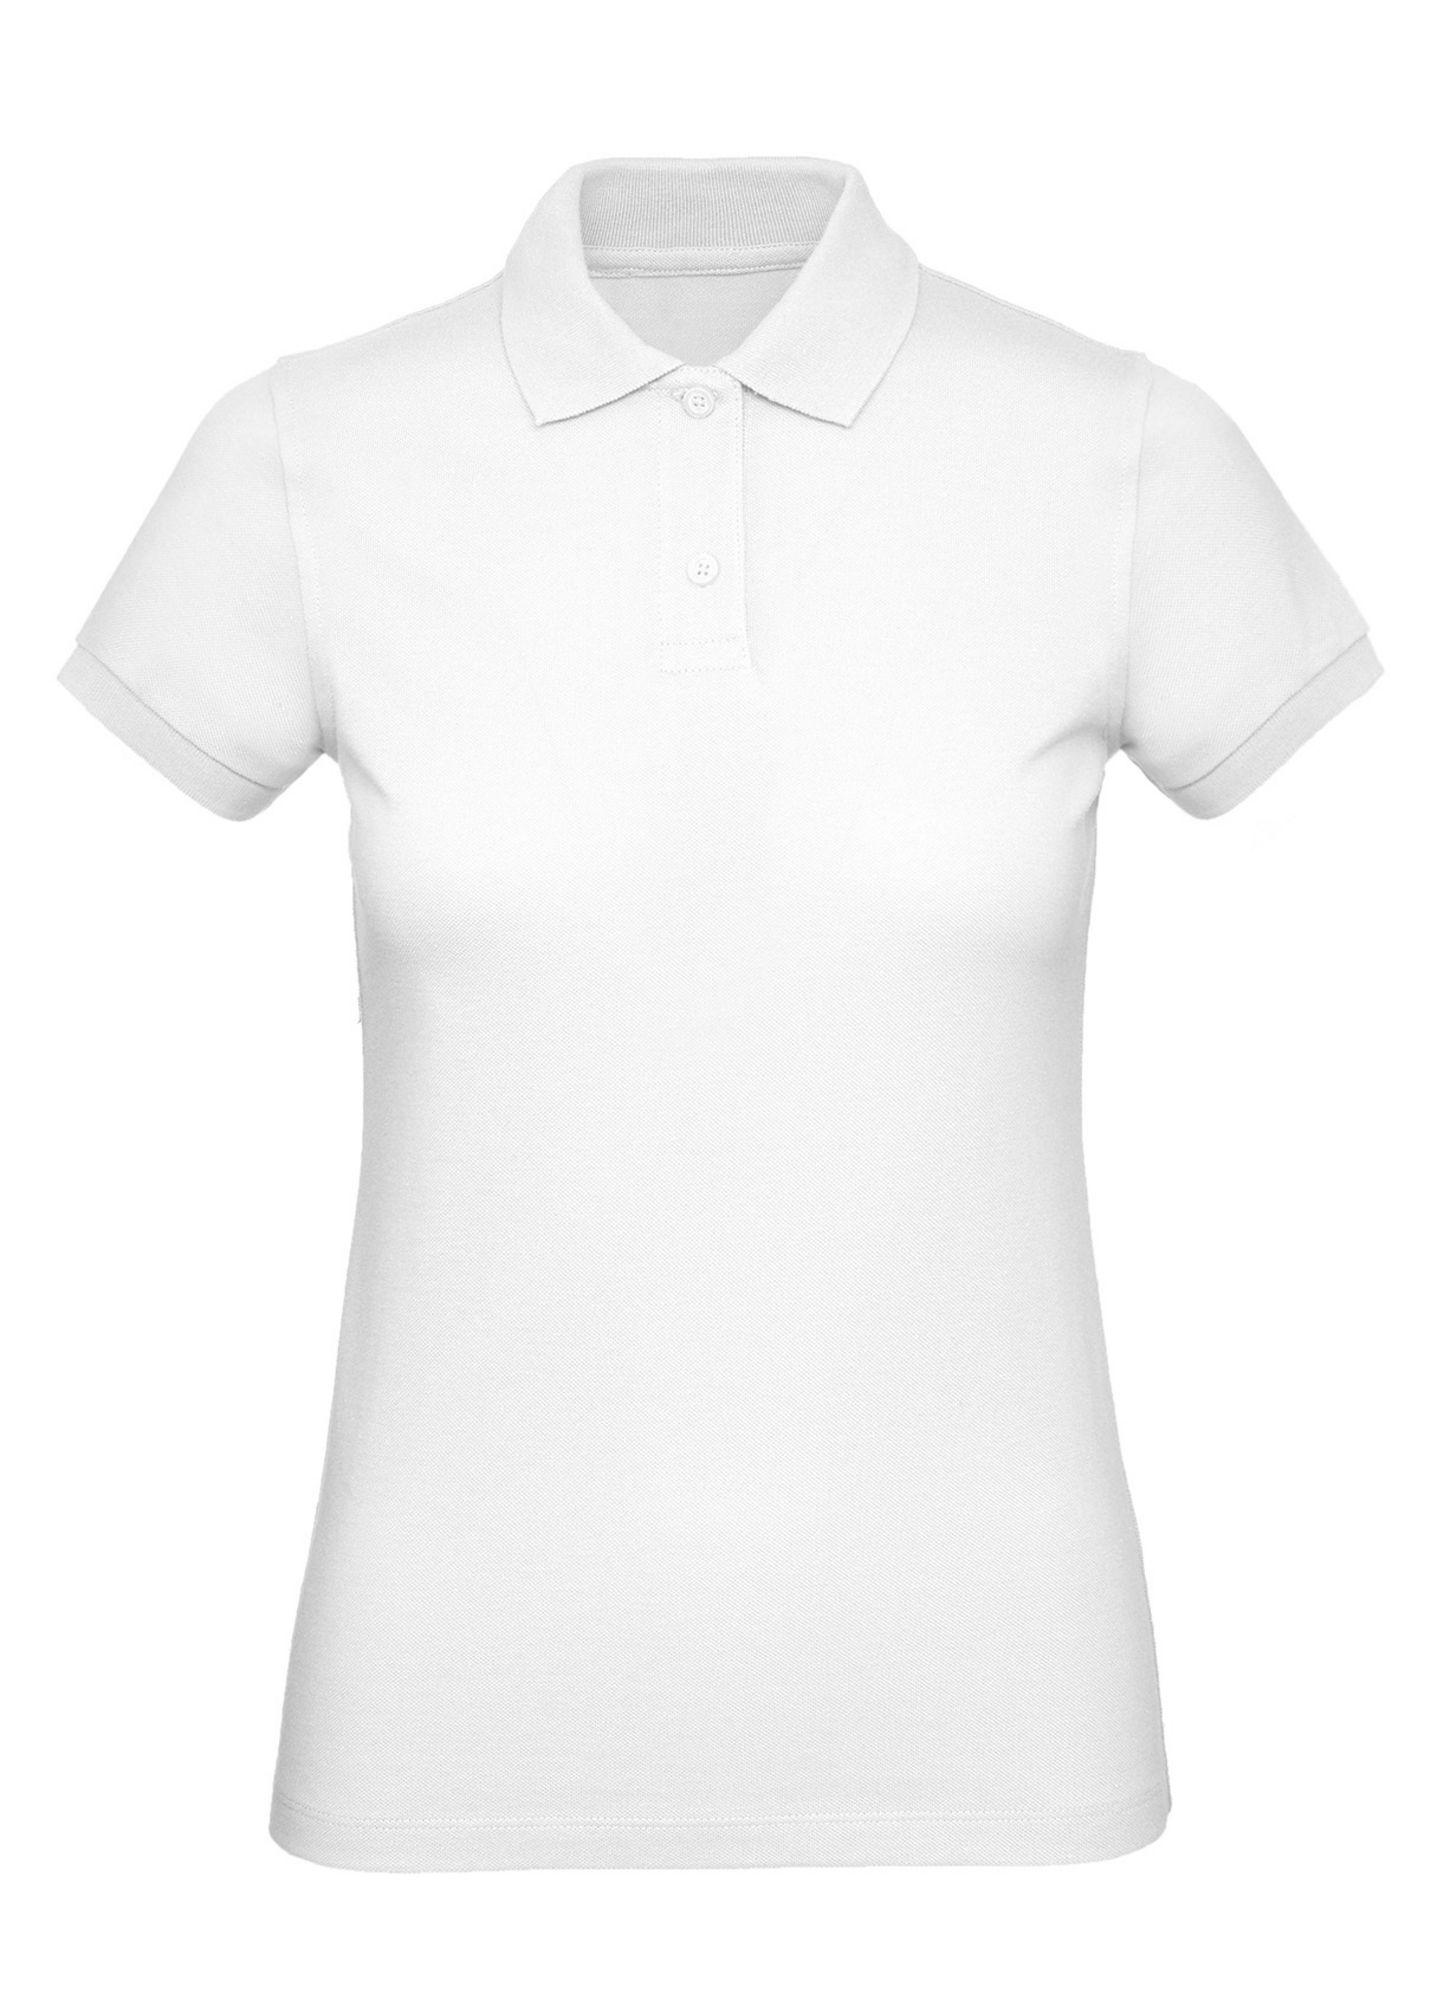 Рубашка поло женская Inspire белая, размер M